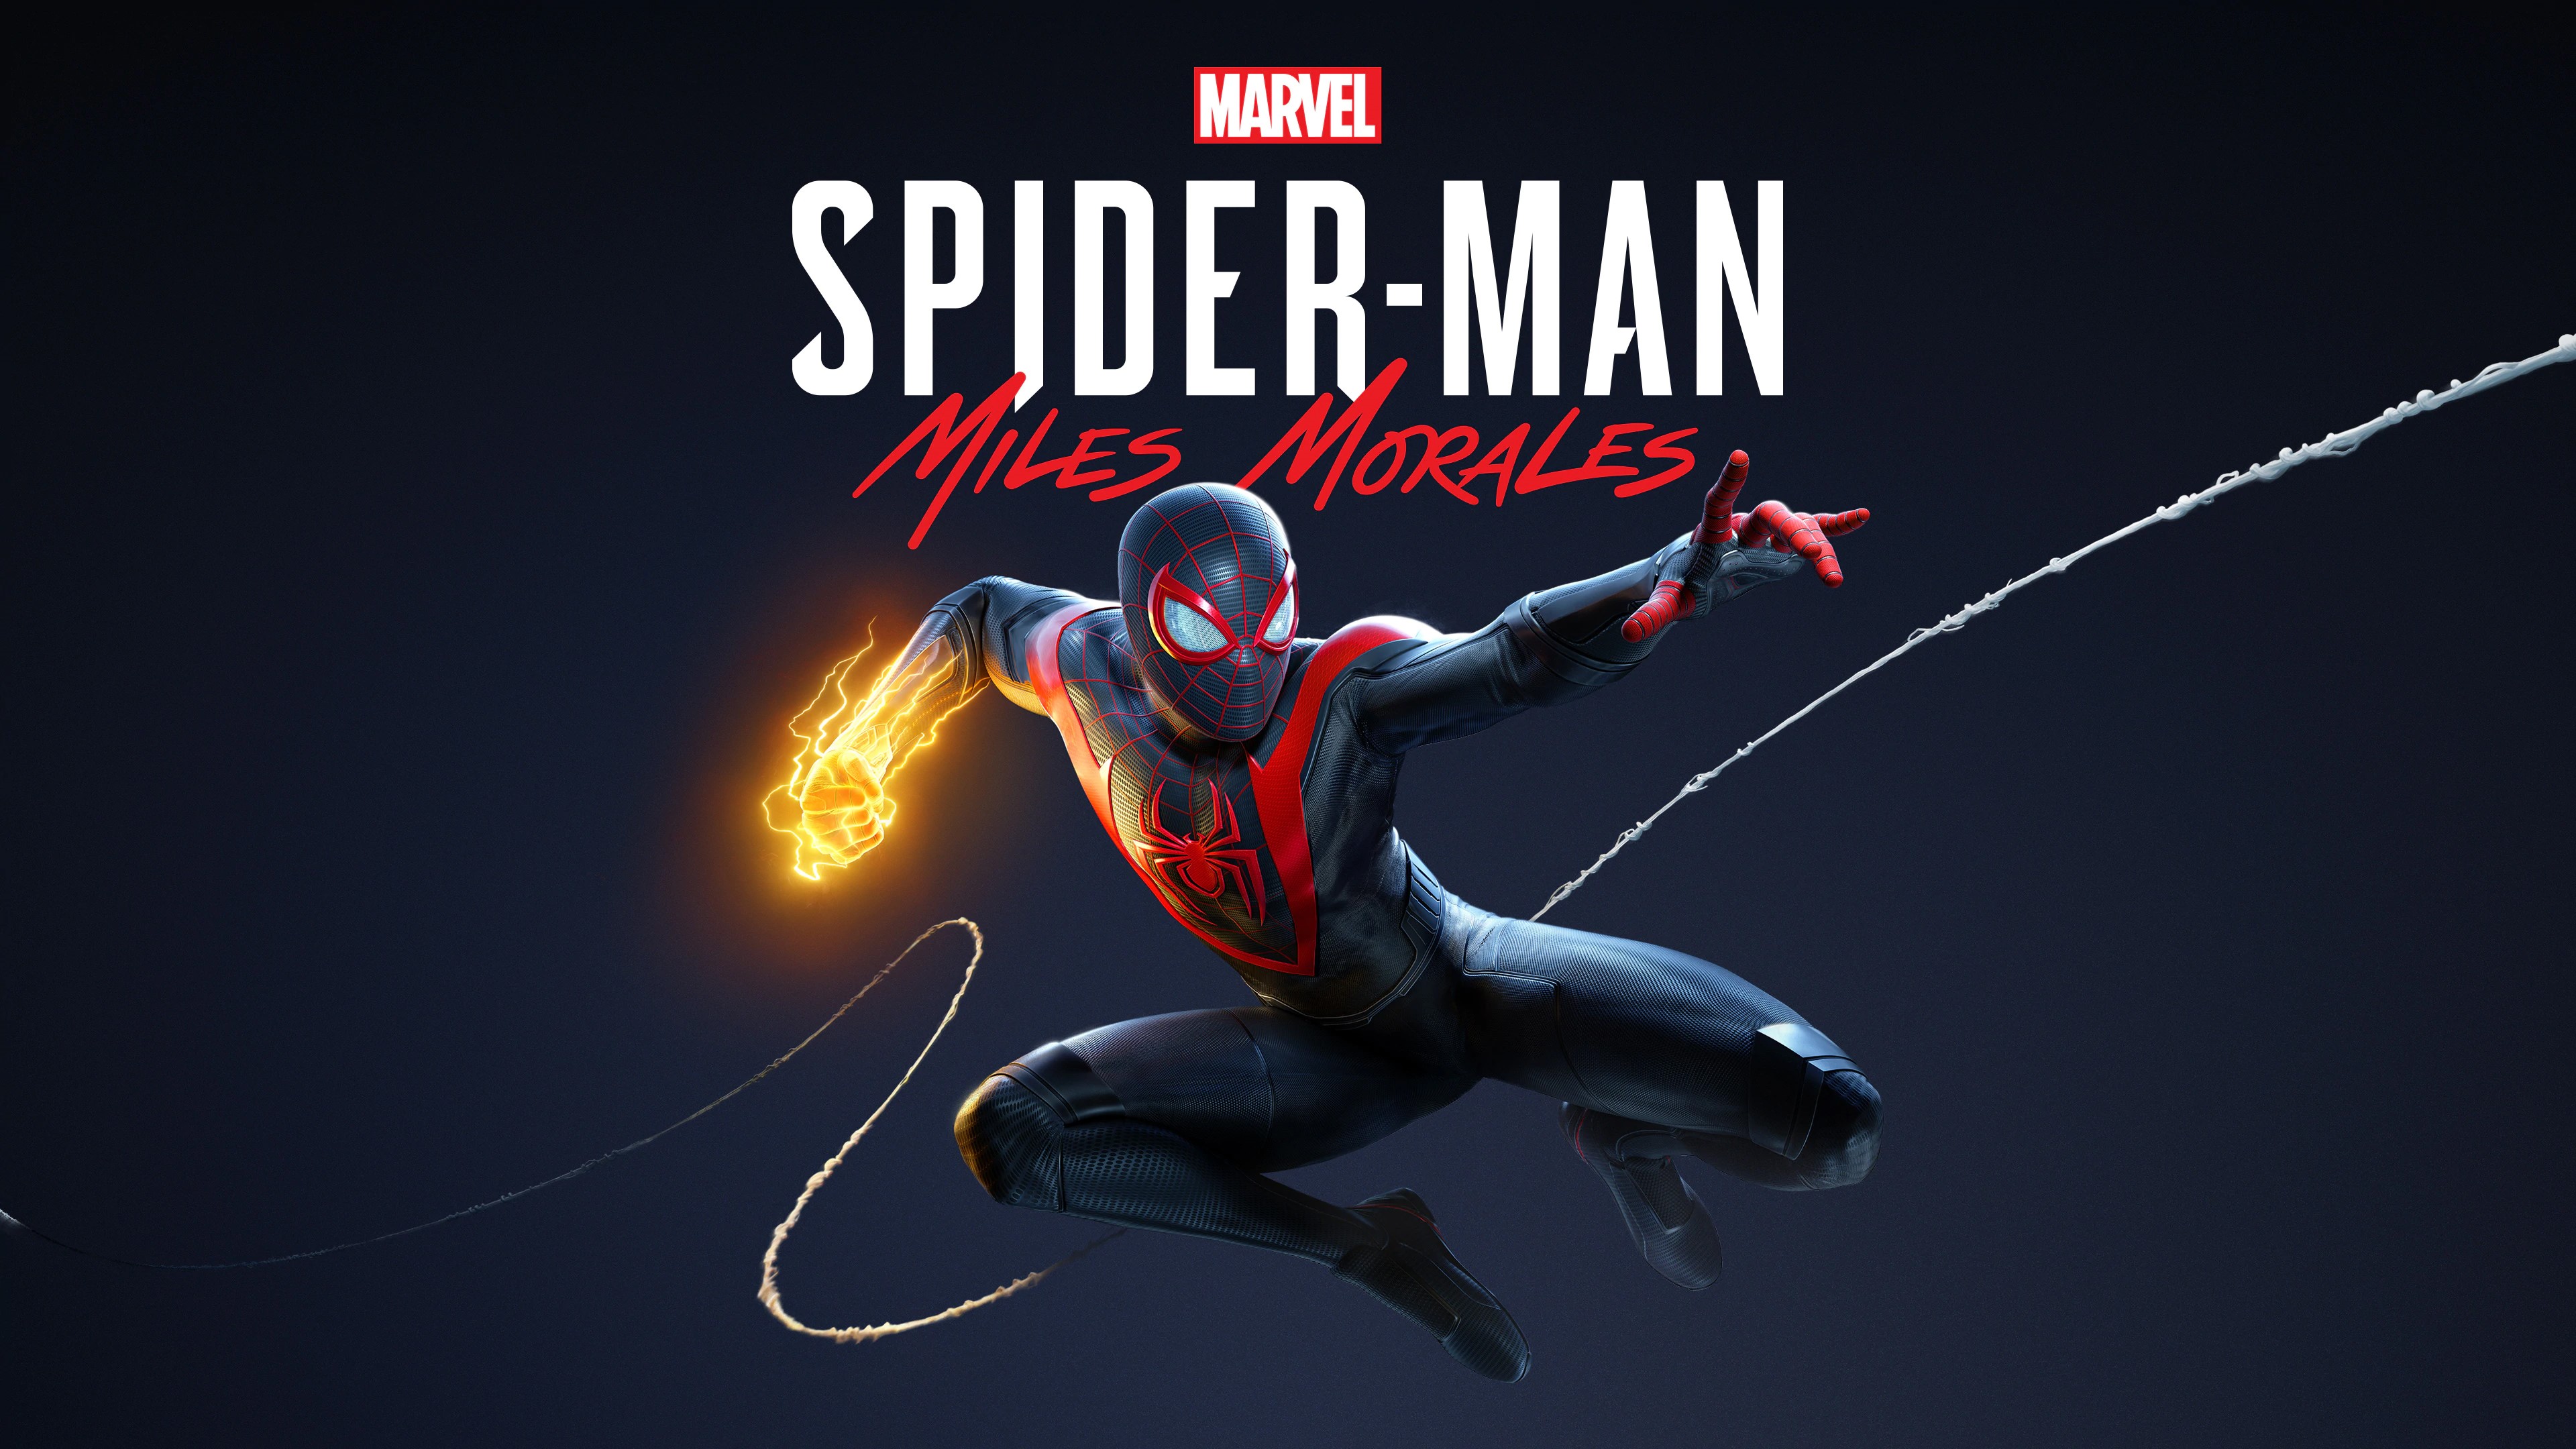 Marvel's Человек-паук /// Spider-Man: Miles Morales ( прохождение 21 )